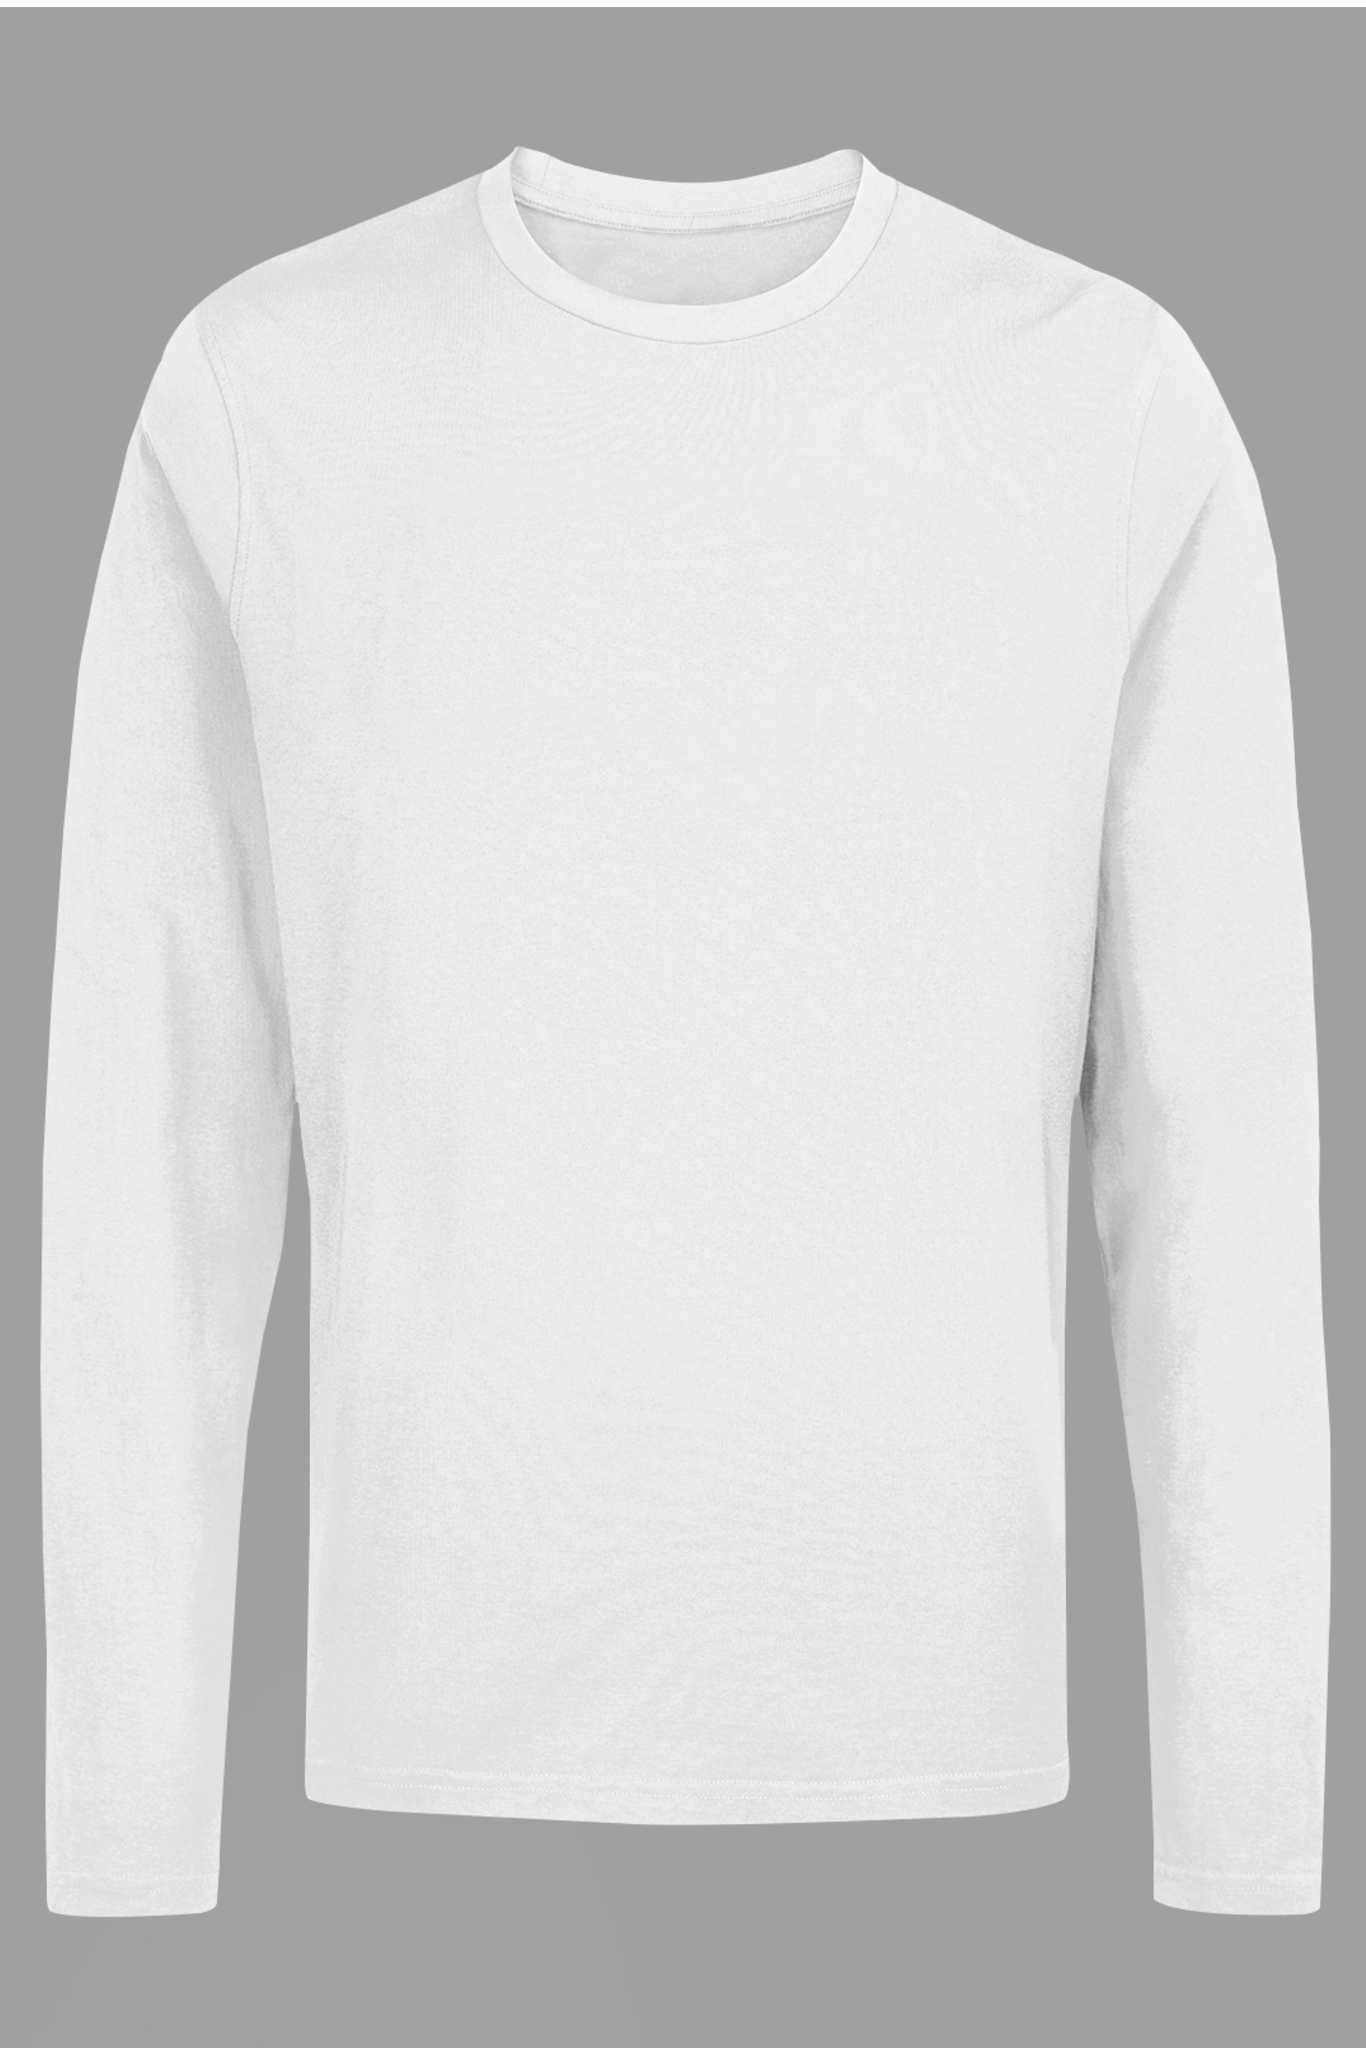 Men's Full Sleeve: White T-Shirt